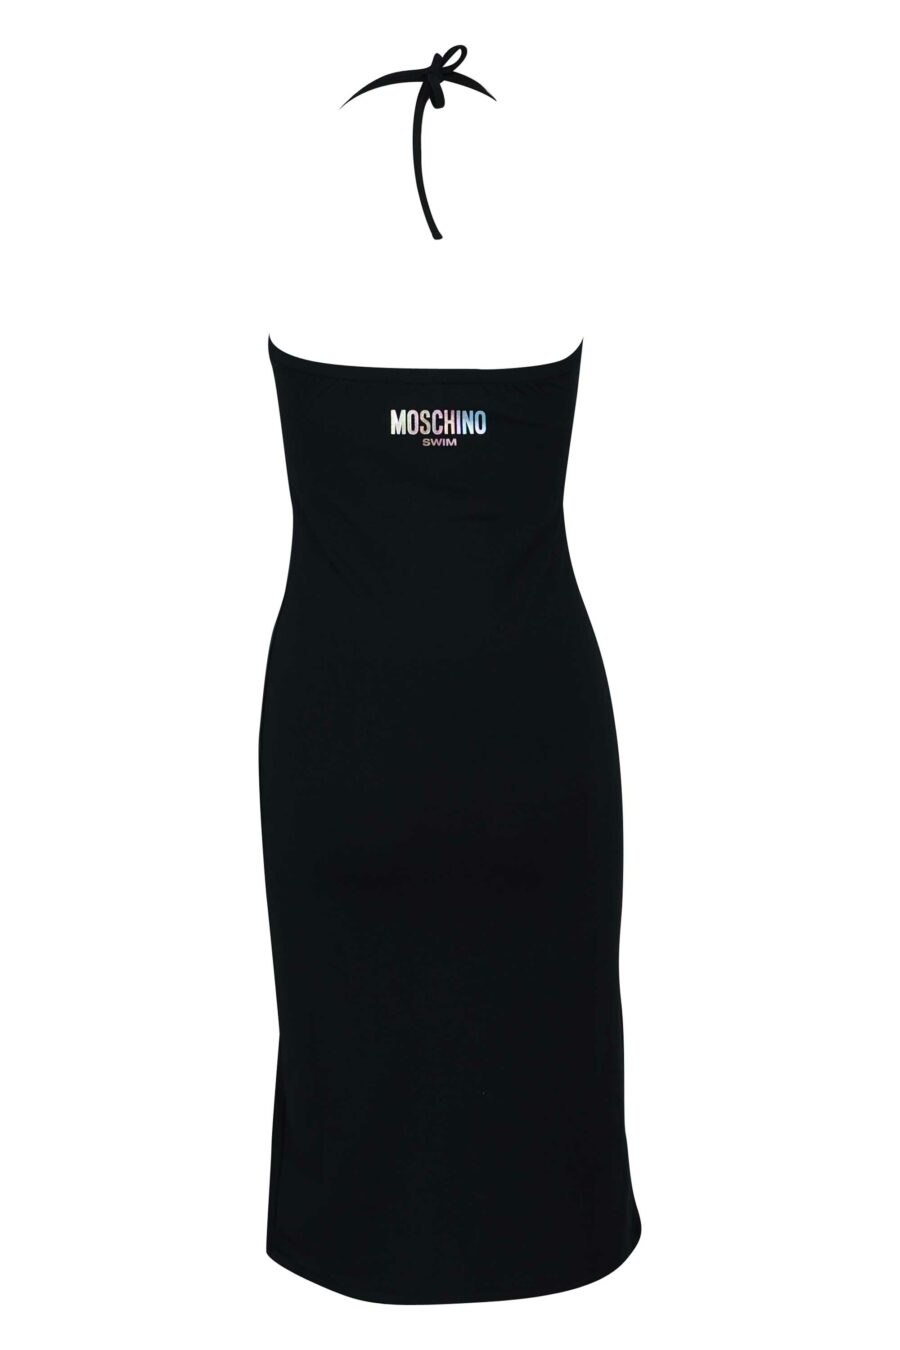 Langes schwarzes Kleid mit Ausschnitt und Mini-Logo - 667113355931 1